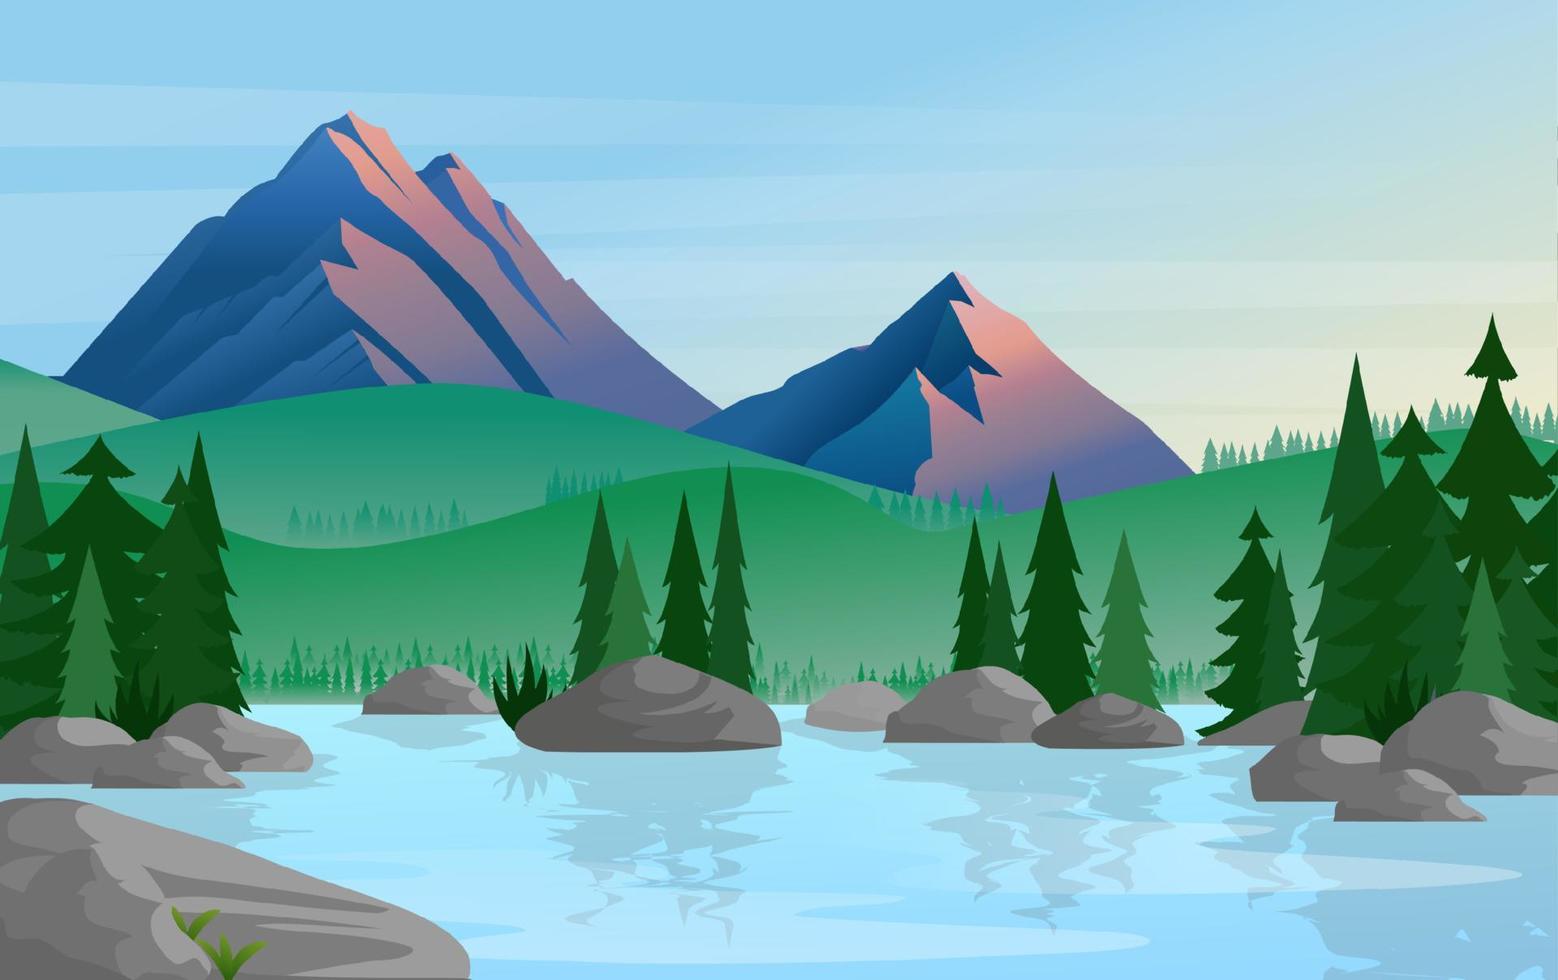 grupp av tall träd reflekterad i lugna fortfarande vatten med bergen på en bakgrund vektor illustration. berg och sjö vektor illustration